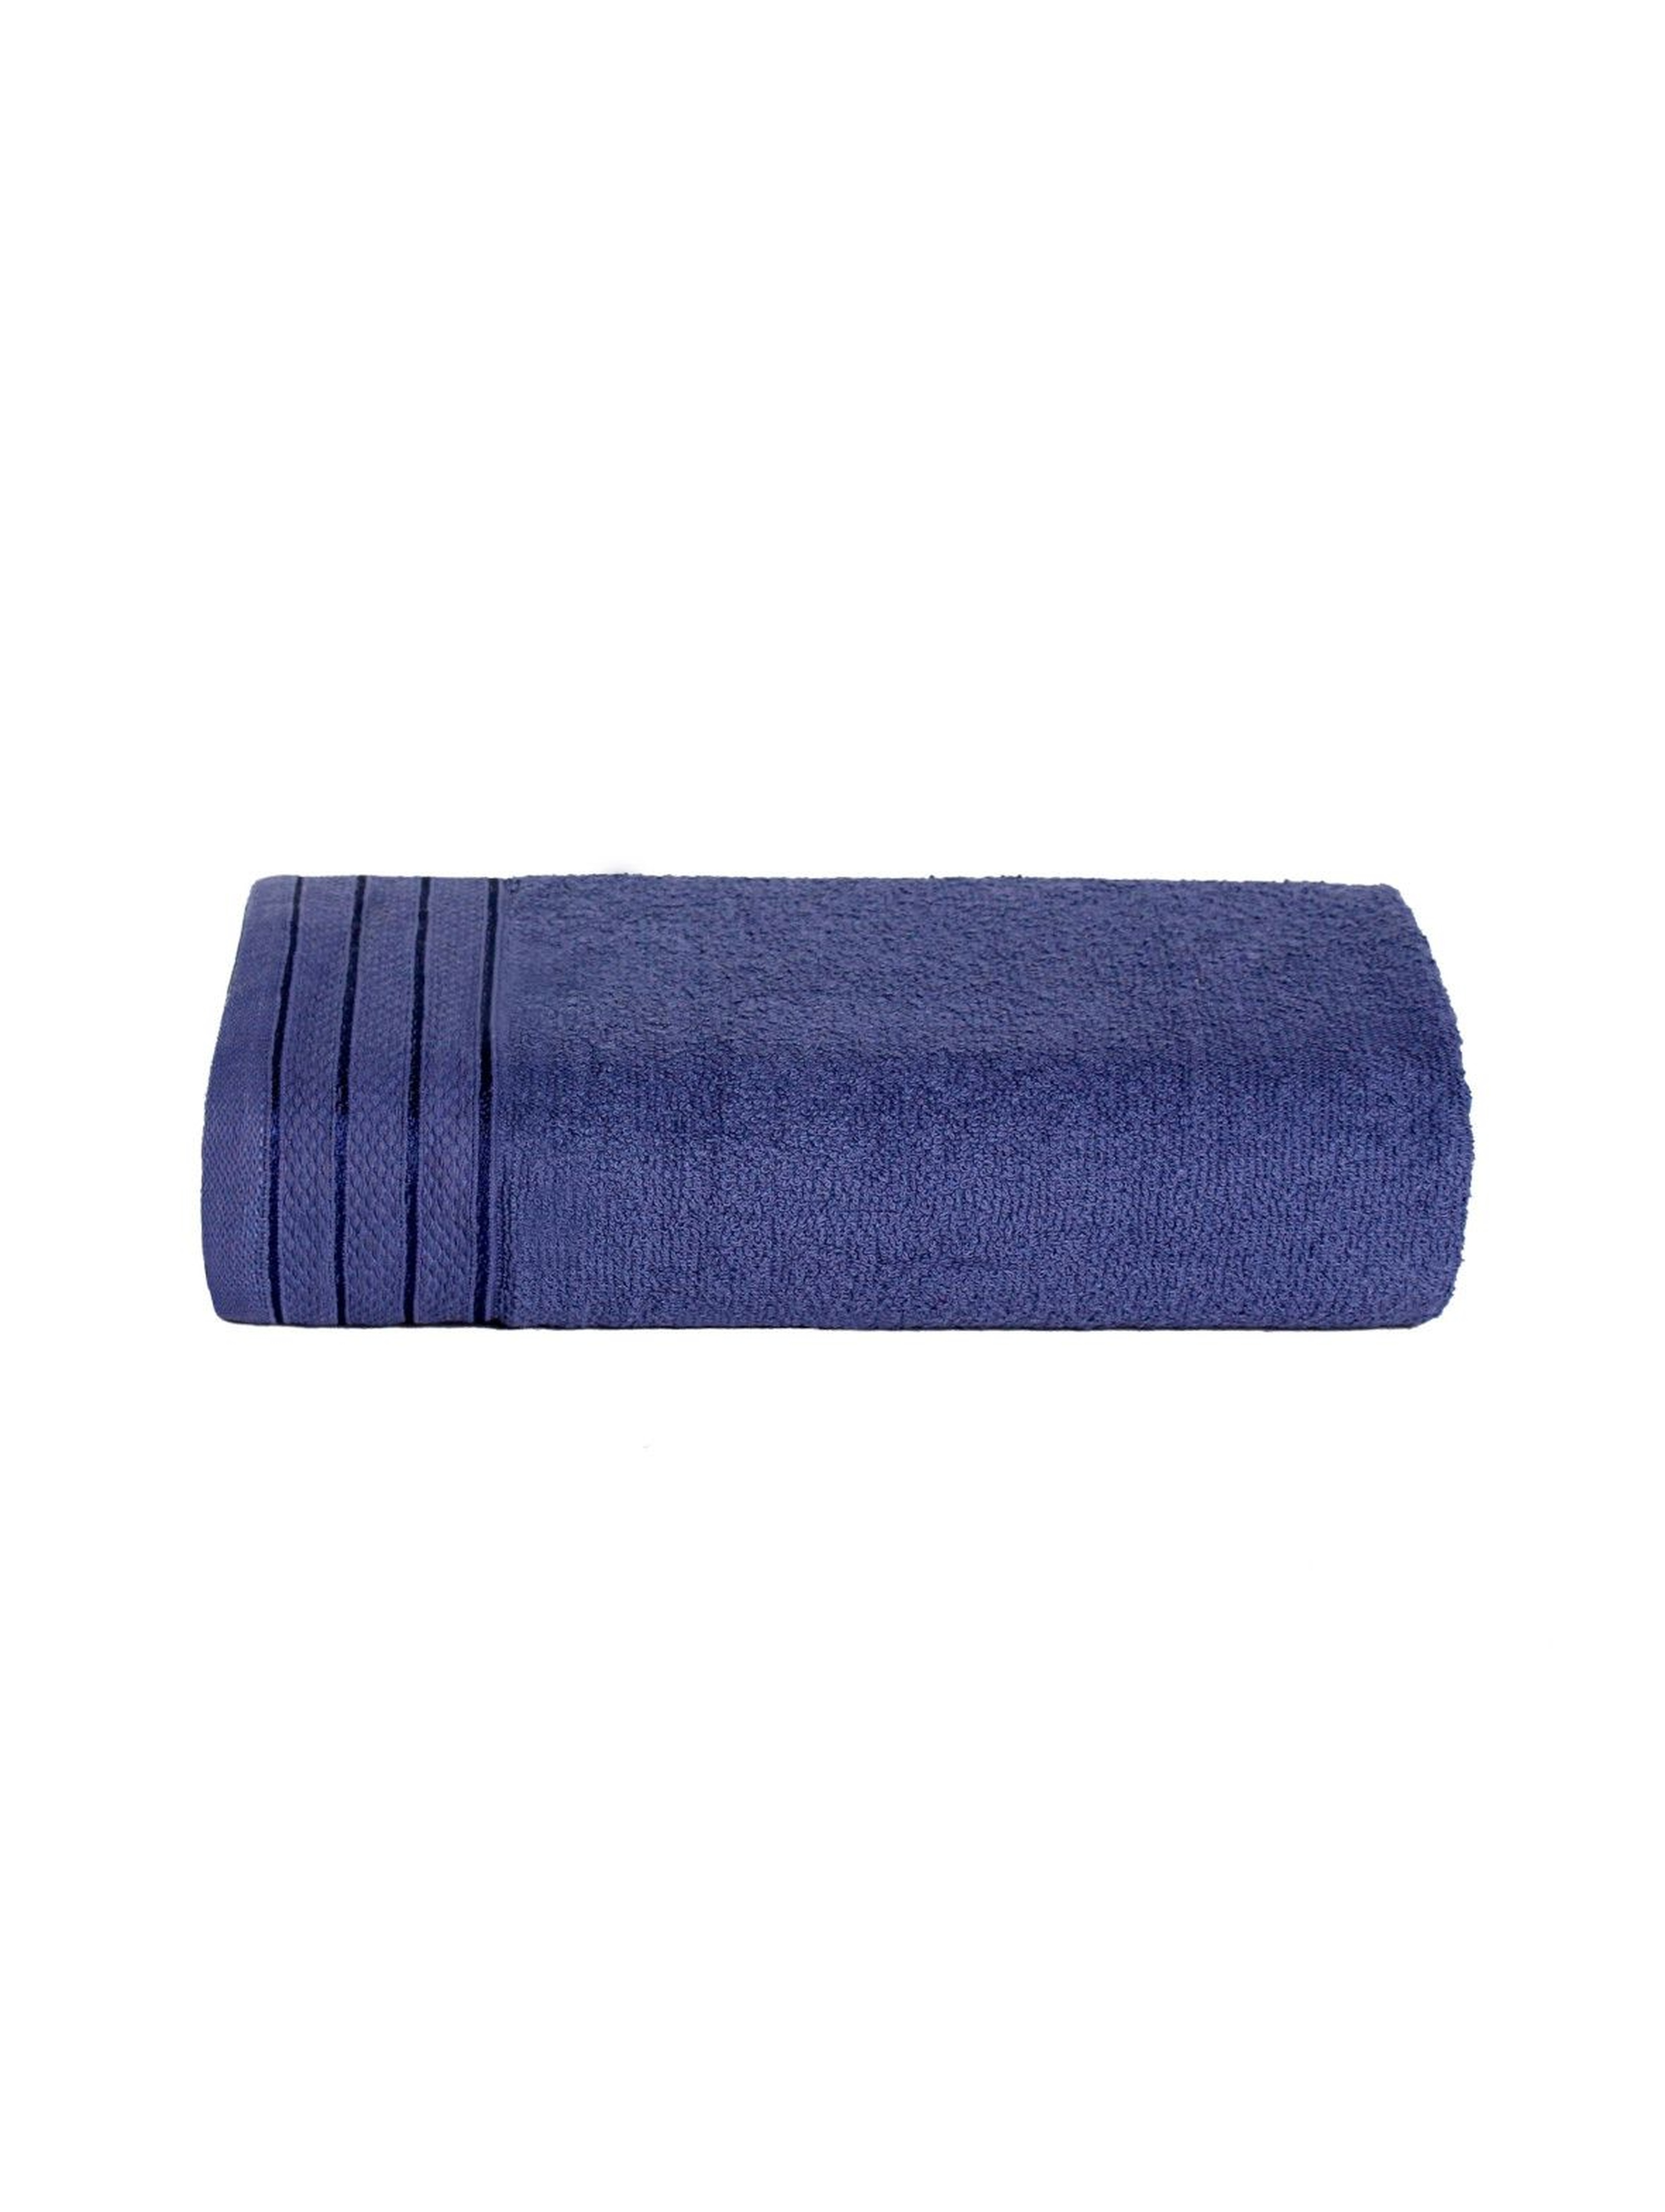 Bawełniany ręcznik w kolorze granatowym o wymiarach 70x140 cm